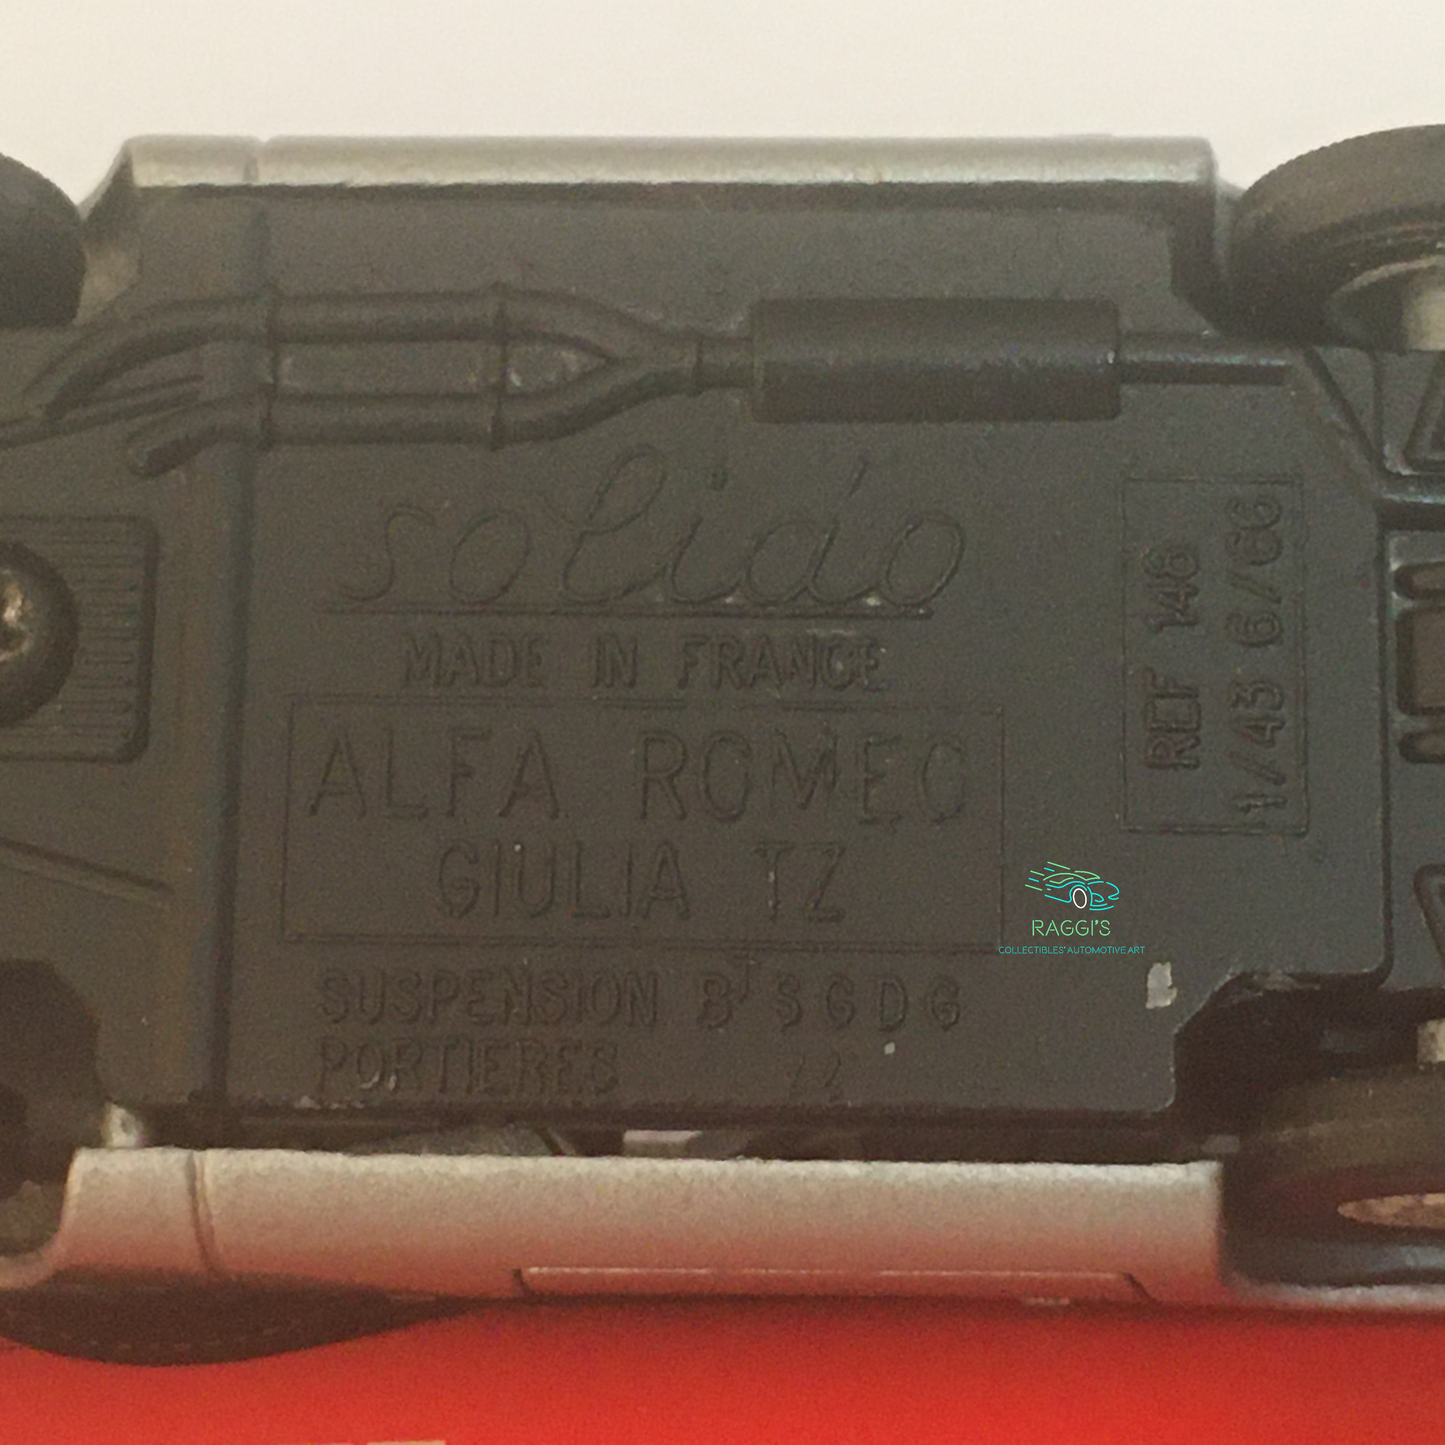 Alfa Romeo, Modellino in Metallo Pressofuso Solido Alfa Romeo Giulia TZ Ref. 148 Scala 1:43